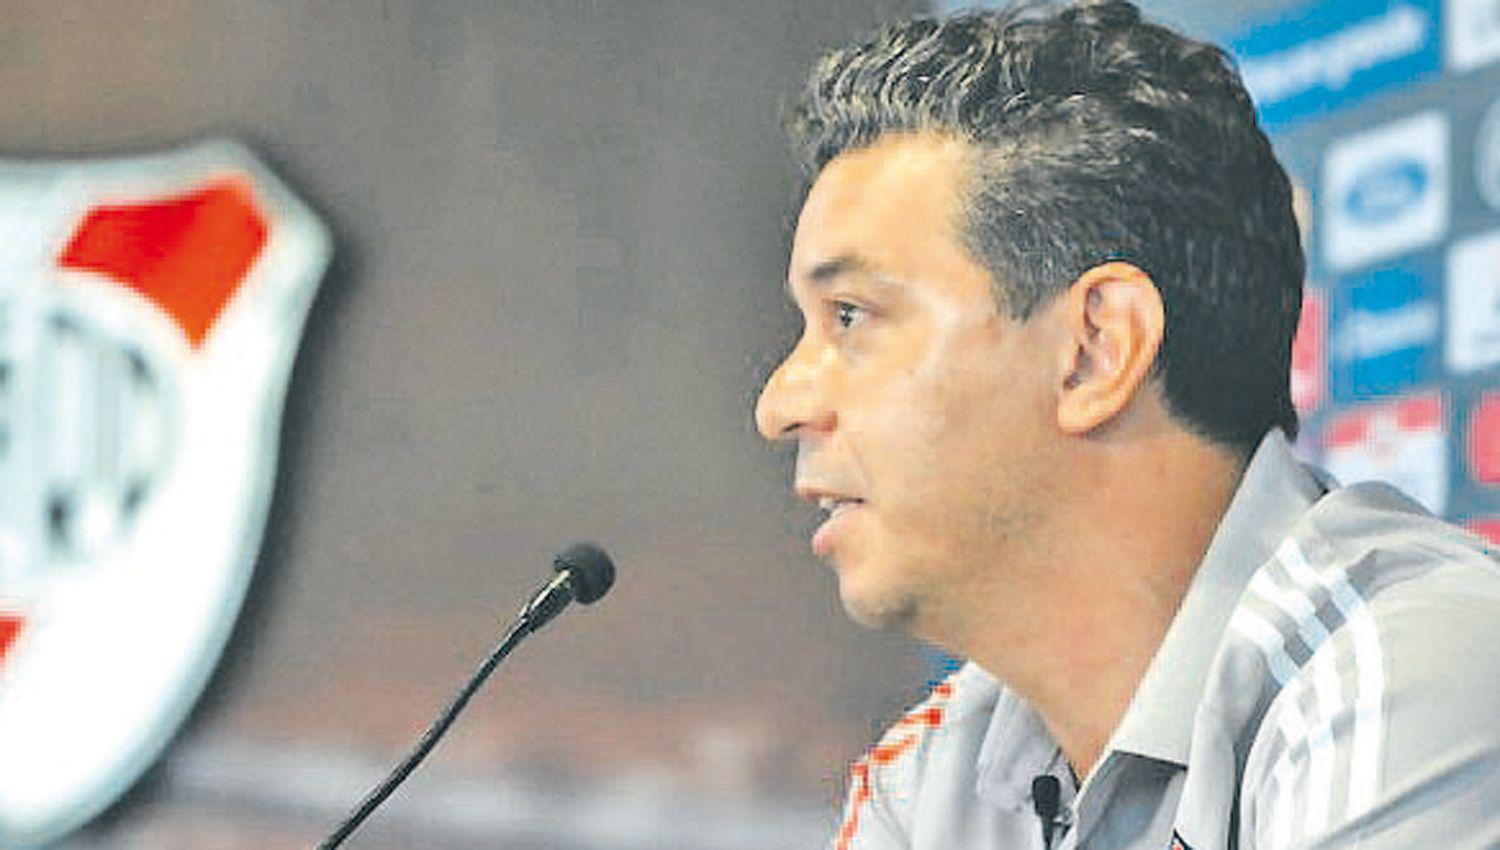 Fuerte criacutetica de Marcelo Gallardo al torneo local y los dirigentes- ldquoMe da pena por el fuacutetbol argentinordquo